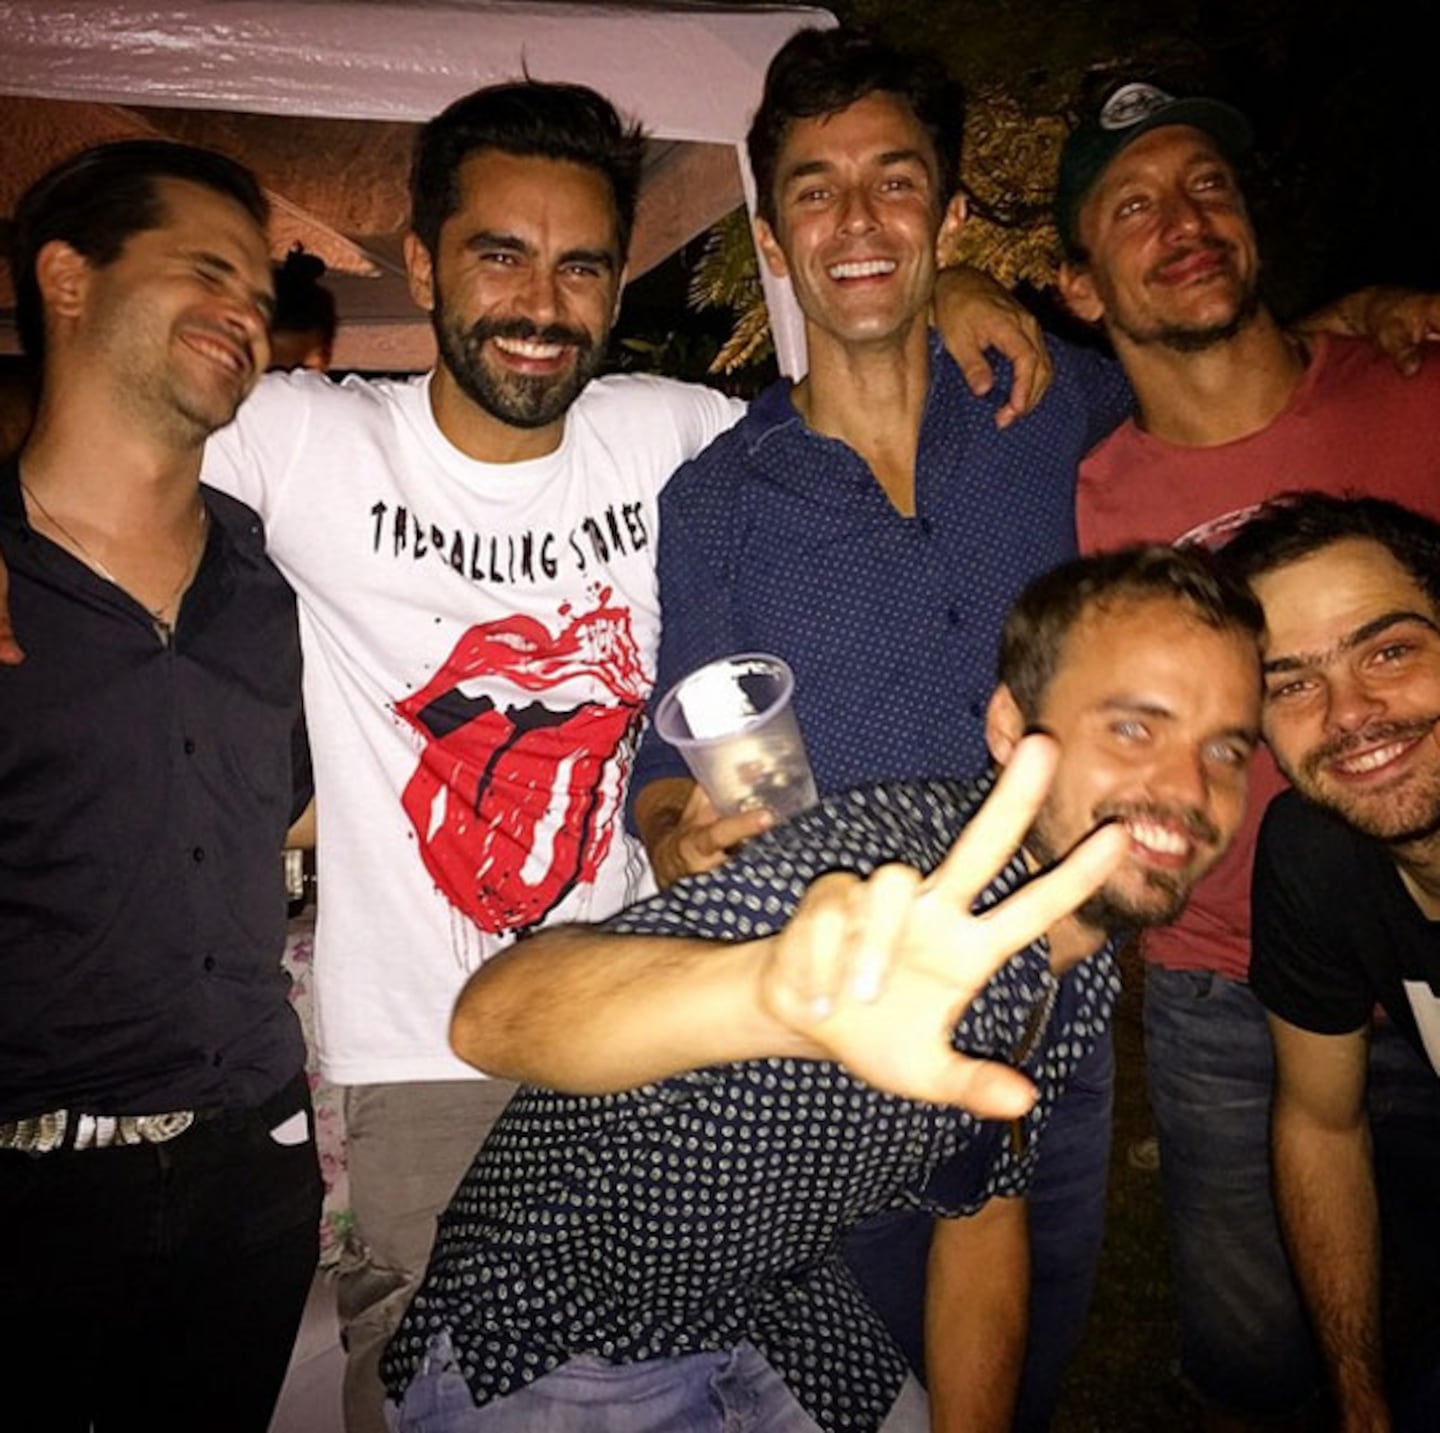 Gonzalo Heredia festejó su cumpleaños rodeado de amigos y ¡con guerra de espuma! (Foto: Instagram)